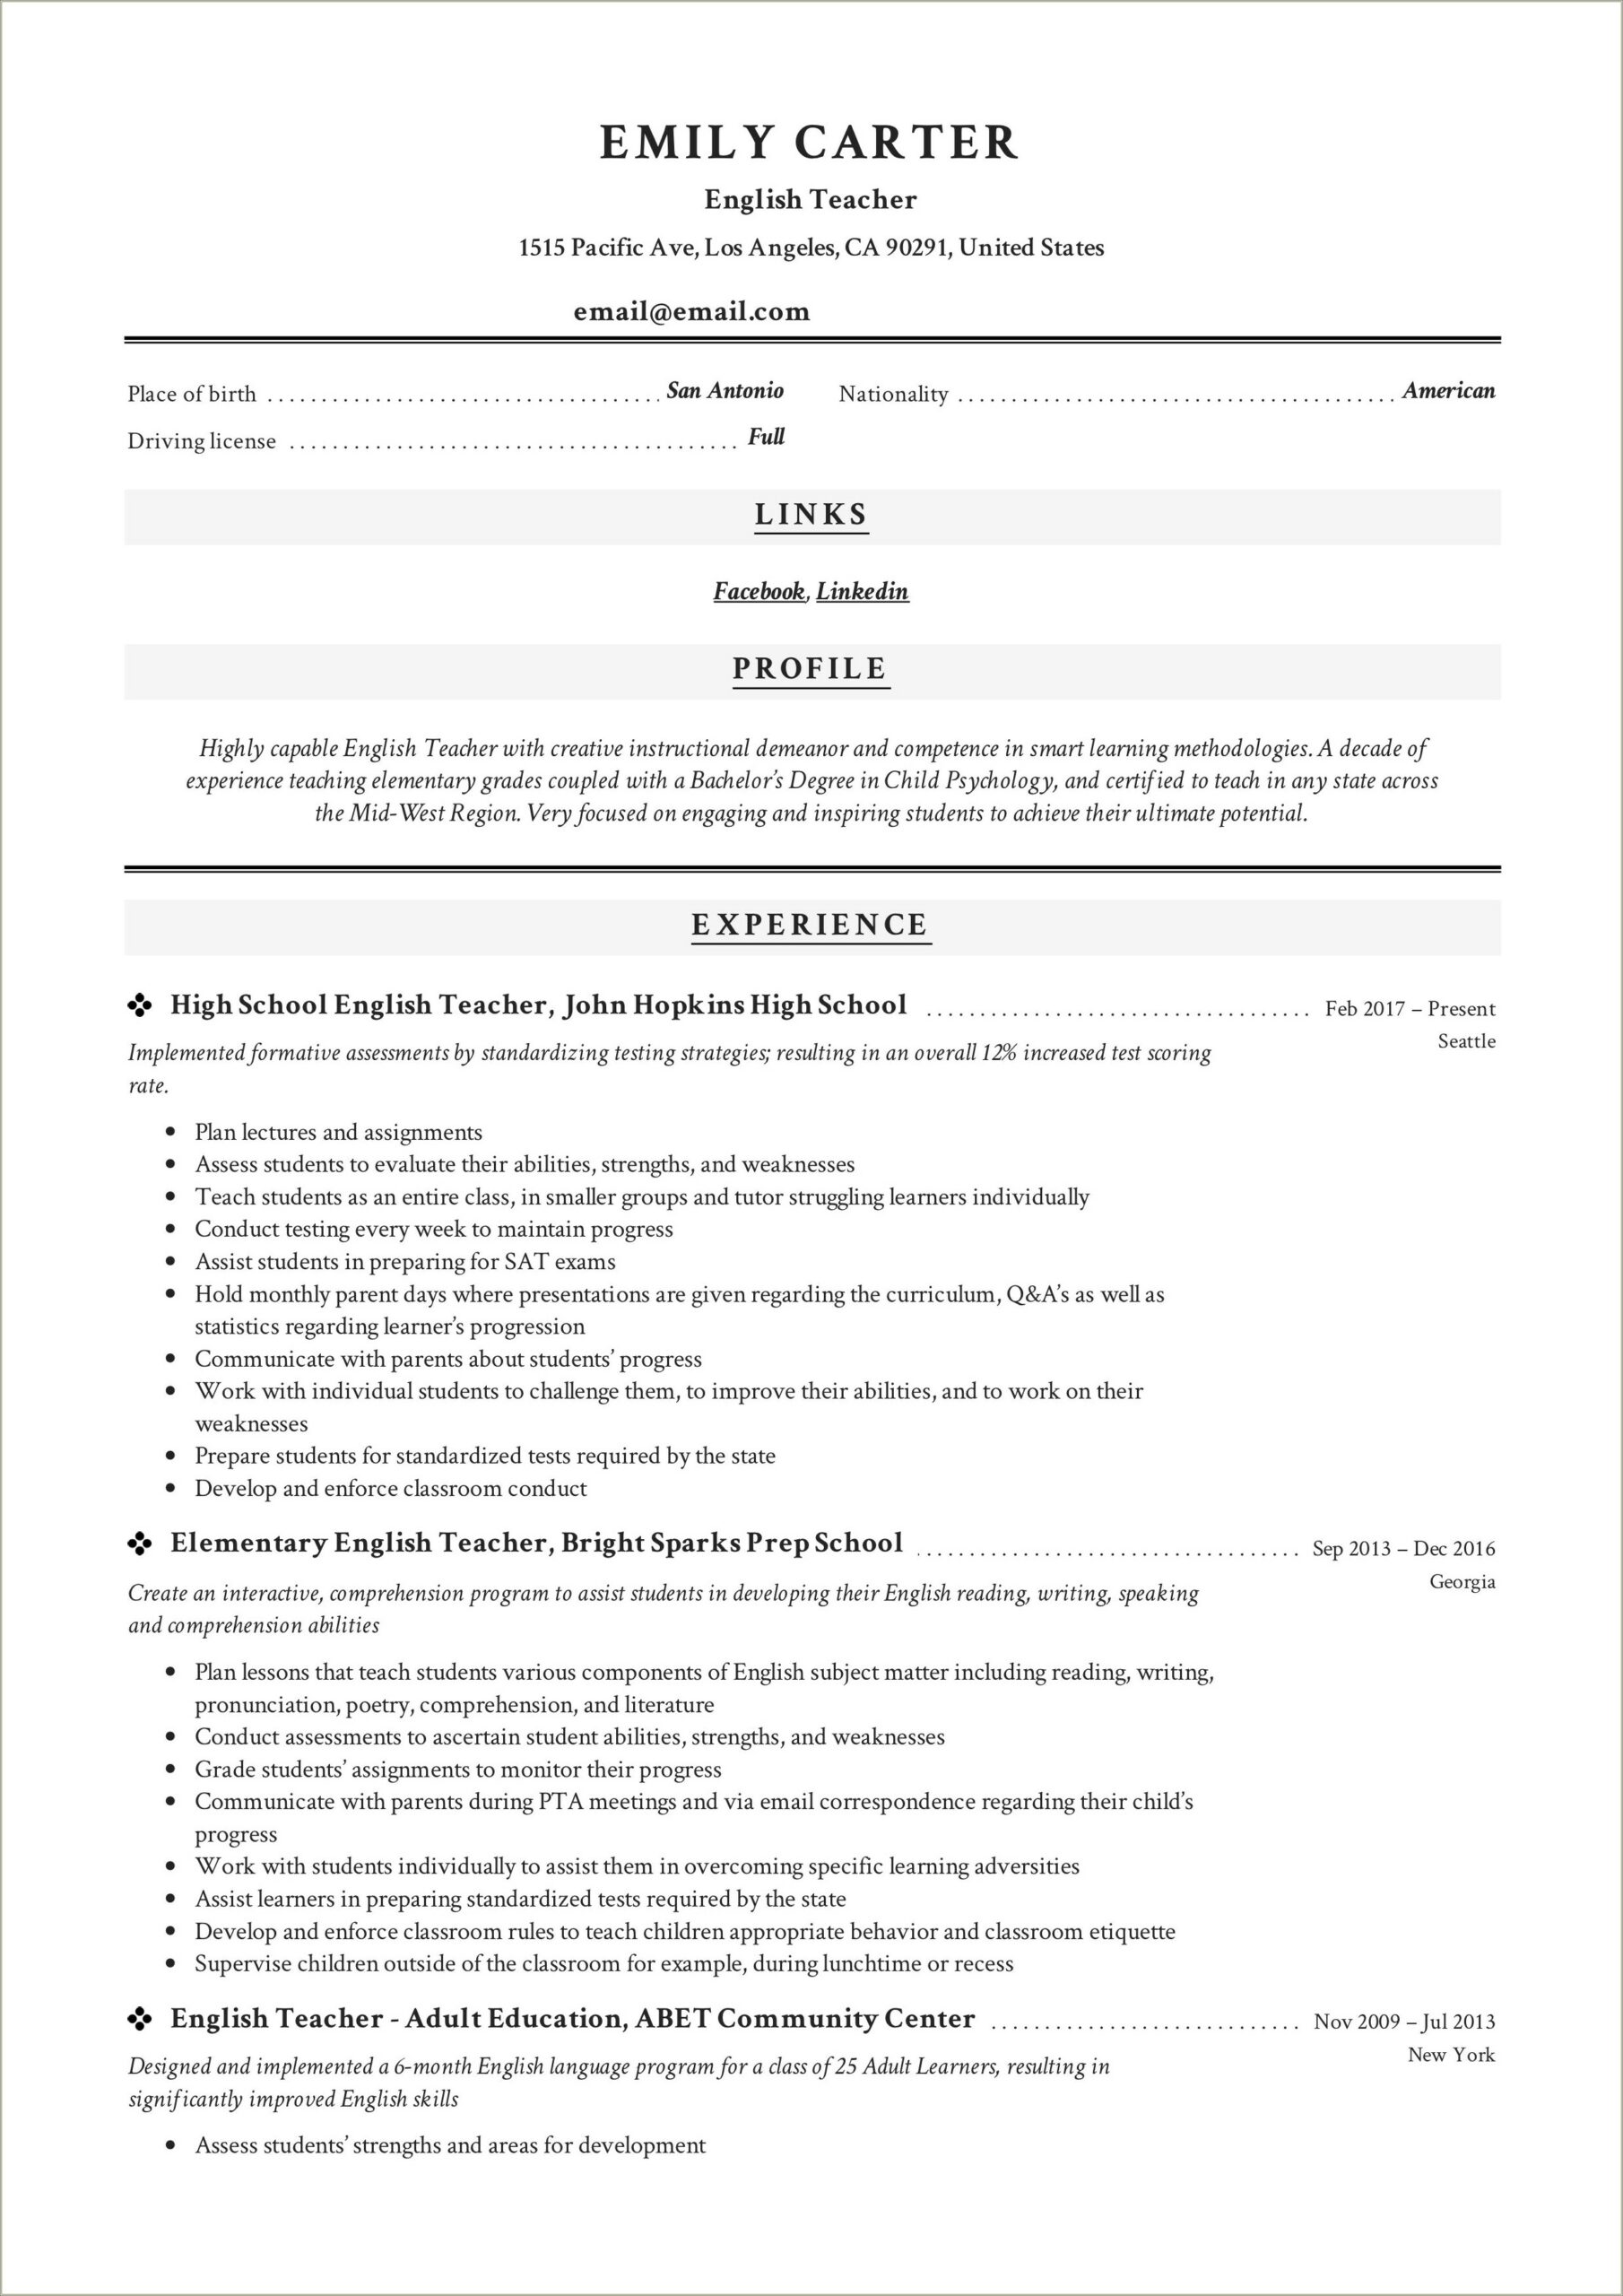 Sample Resume For High School Teacher India